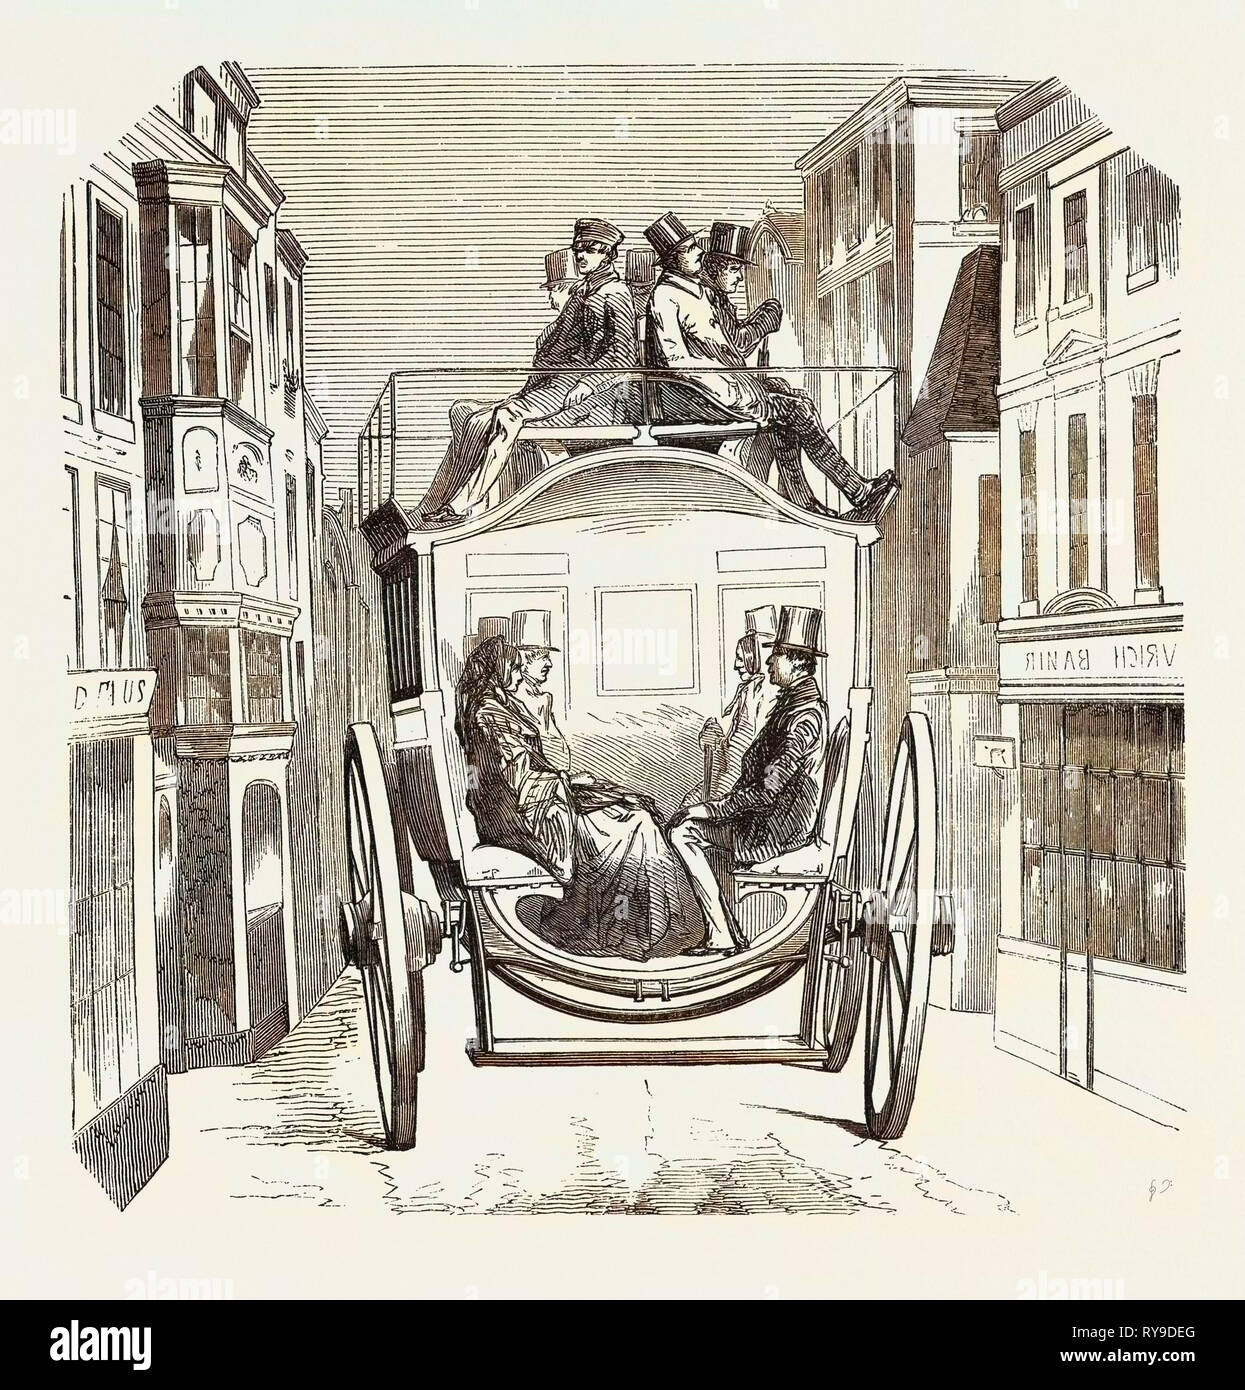 Modèle Adopté par la nouvelle compagnie d'autobus de la ville de Londres. Garniture intérieure. 1855, au Royaume-Uni. Gravure Banque D'Images